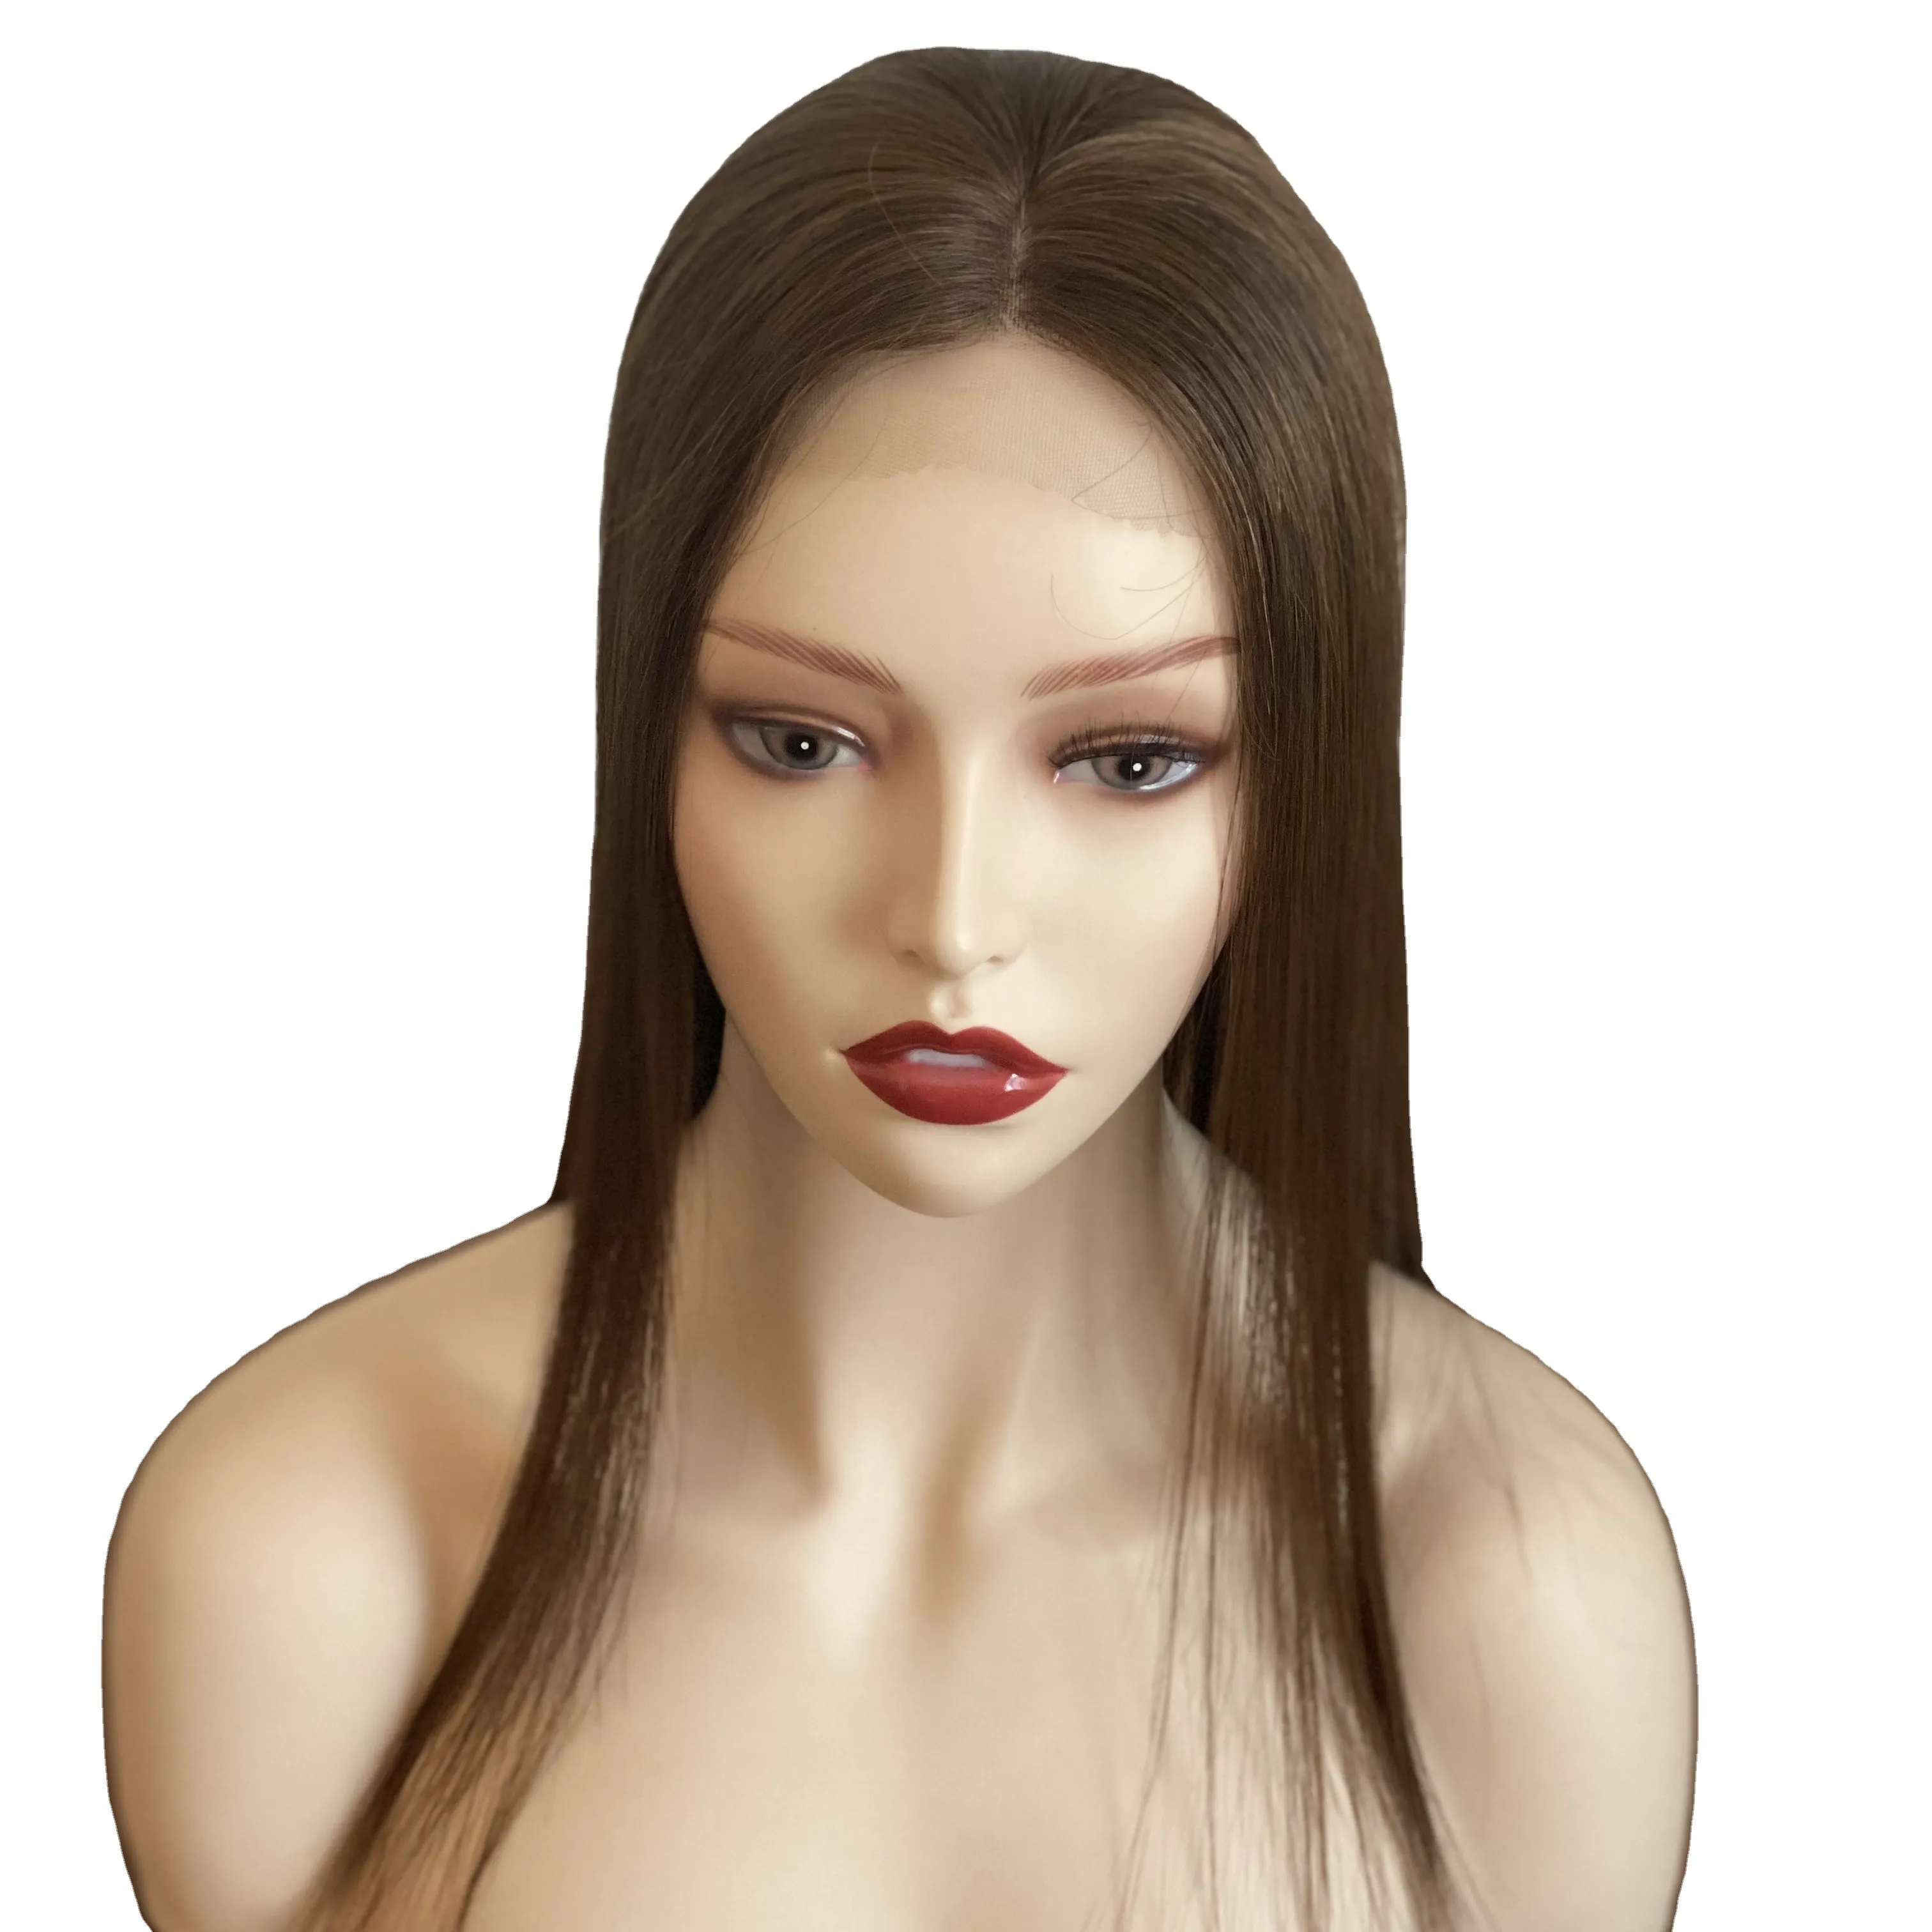 Peruca de seda 5.5*5.5 com renda frontal e trama traseira, cabelo humano virgem de alta qualidade, cabelo natural para mulheres, peruca de cabelo de cor marrom